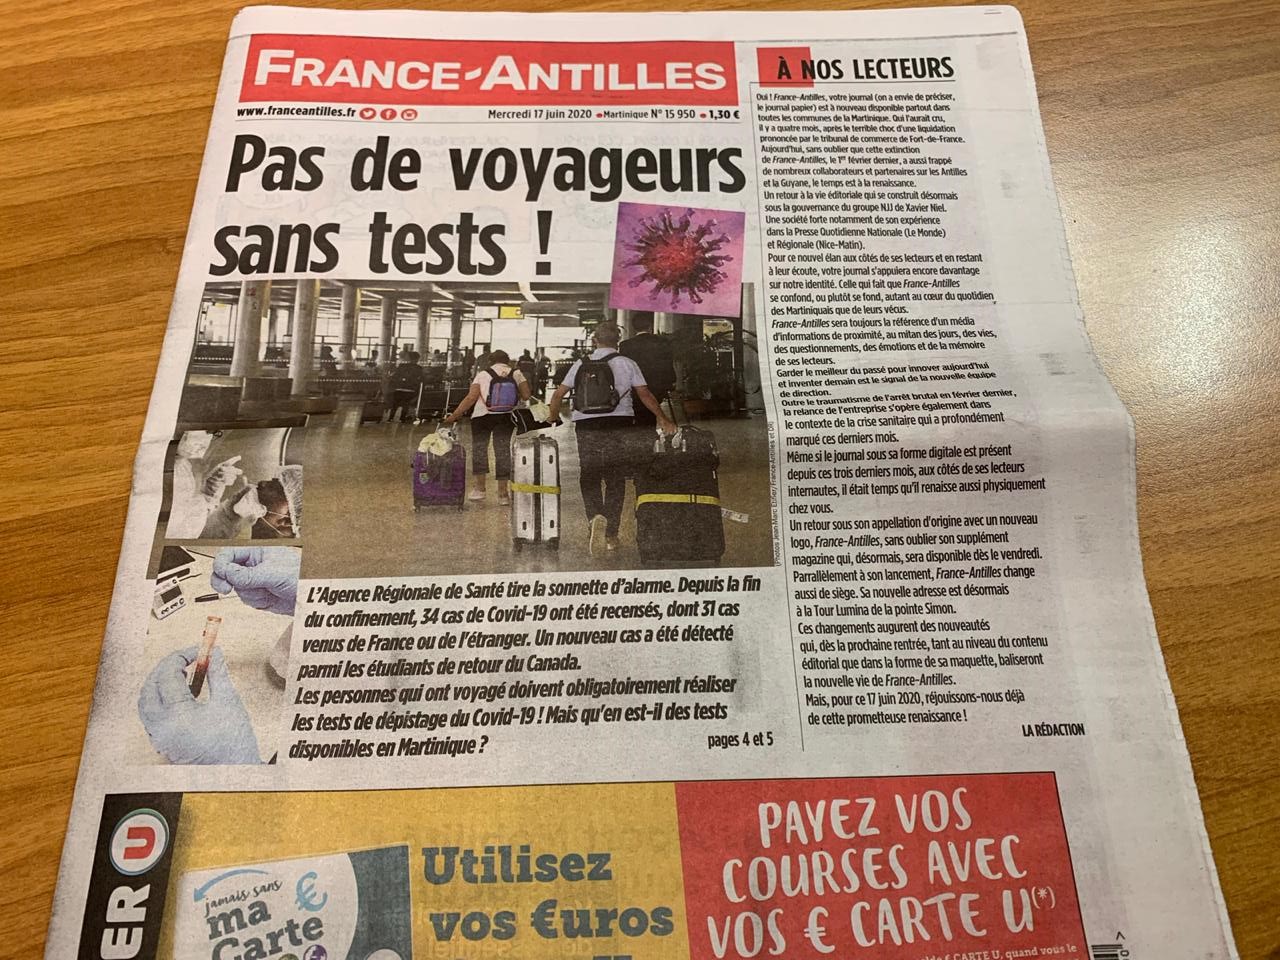     France-Antilles est de retour chez vos marchands de journaux

